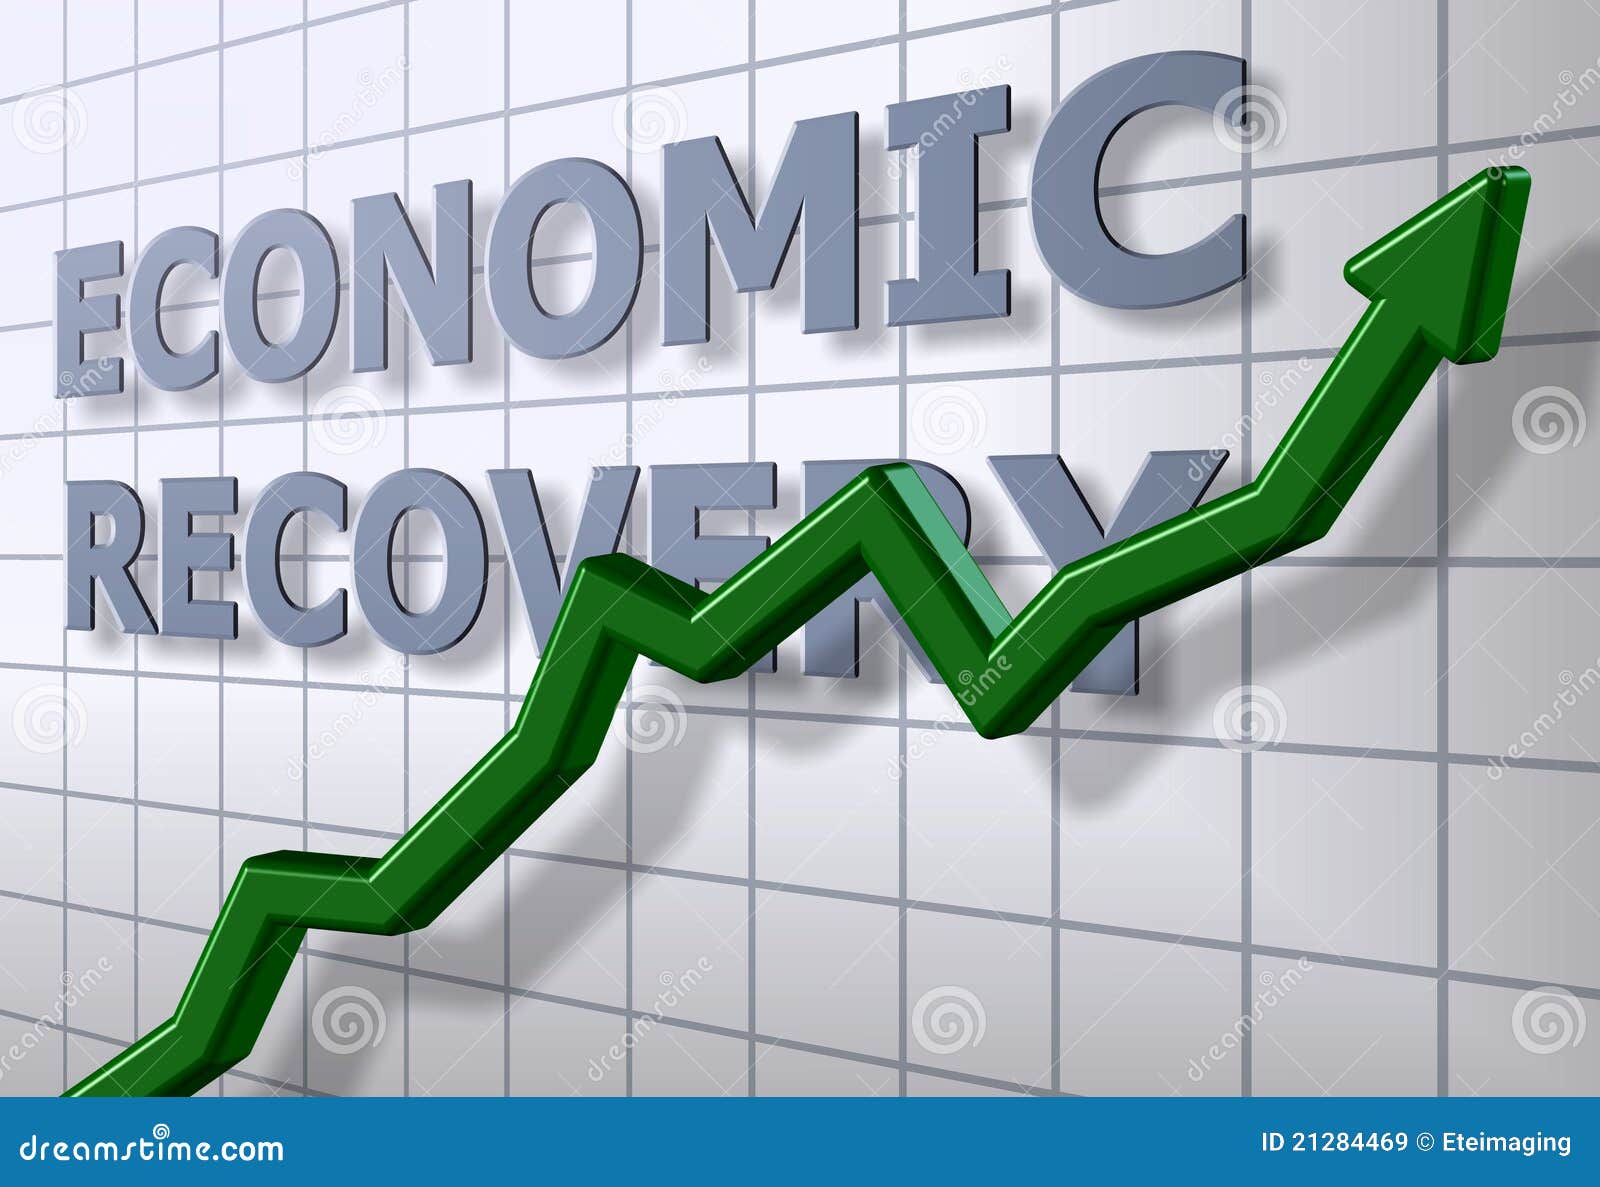 economic recovery